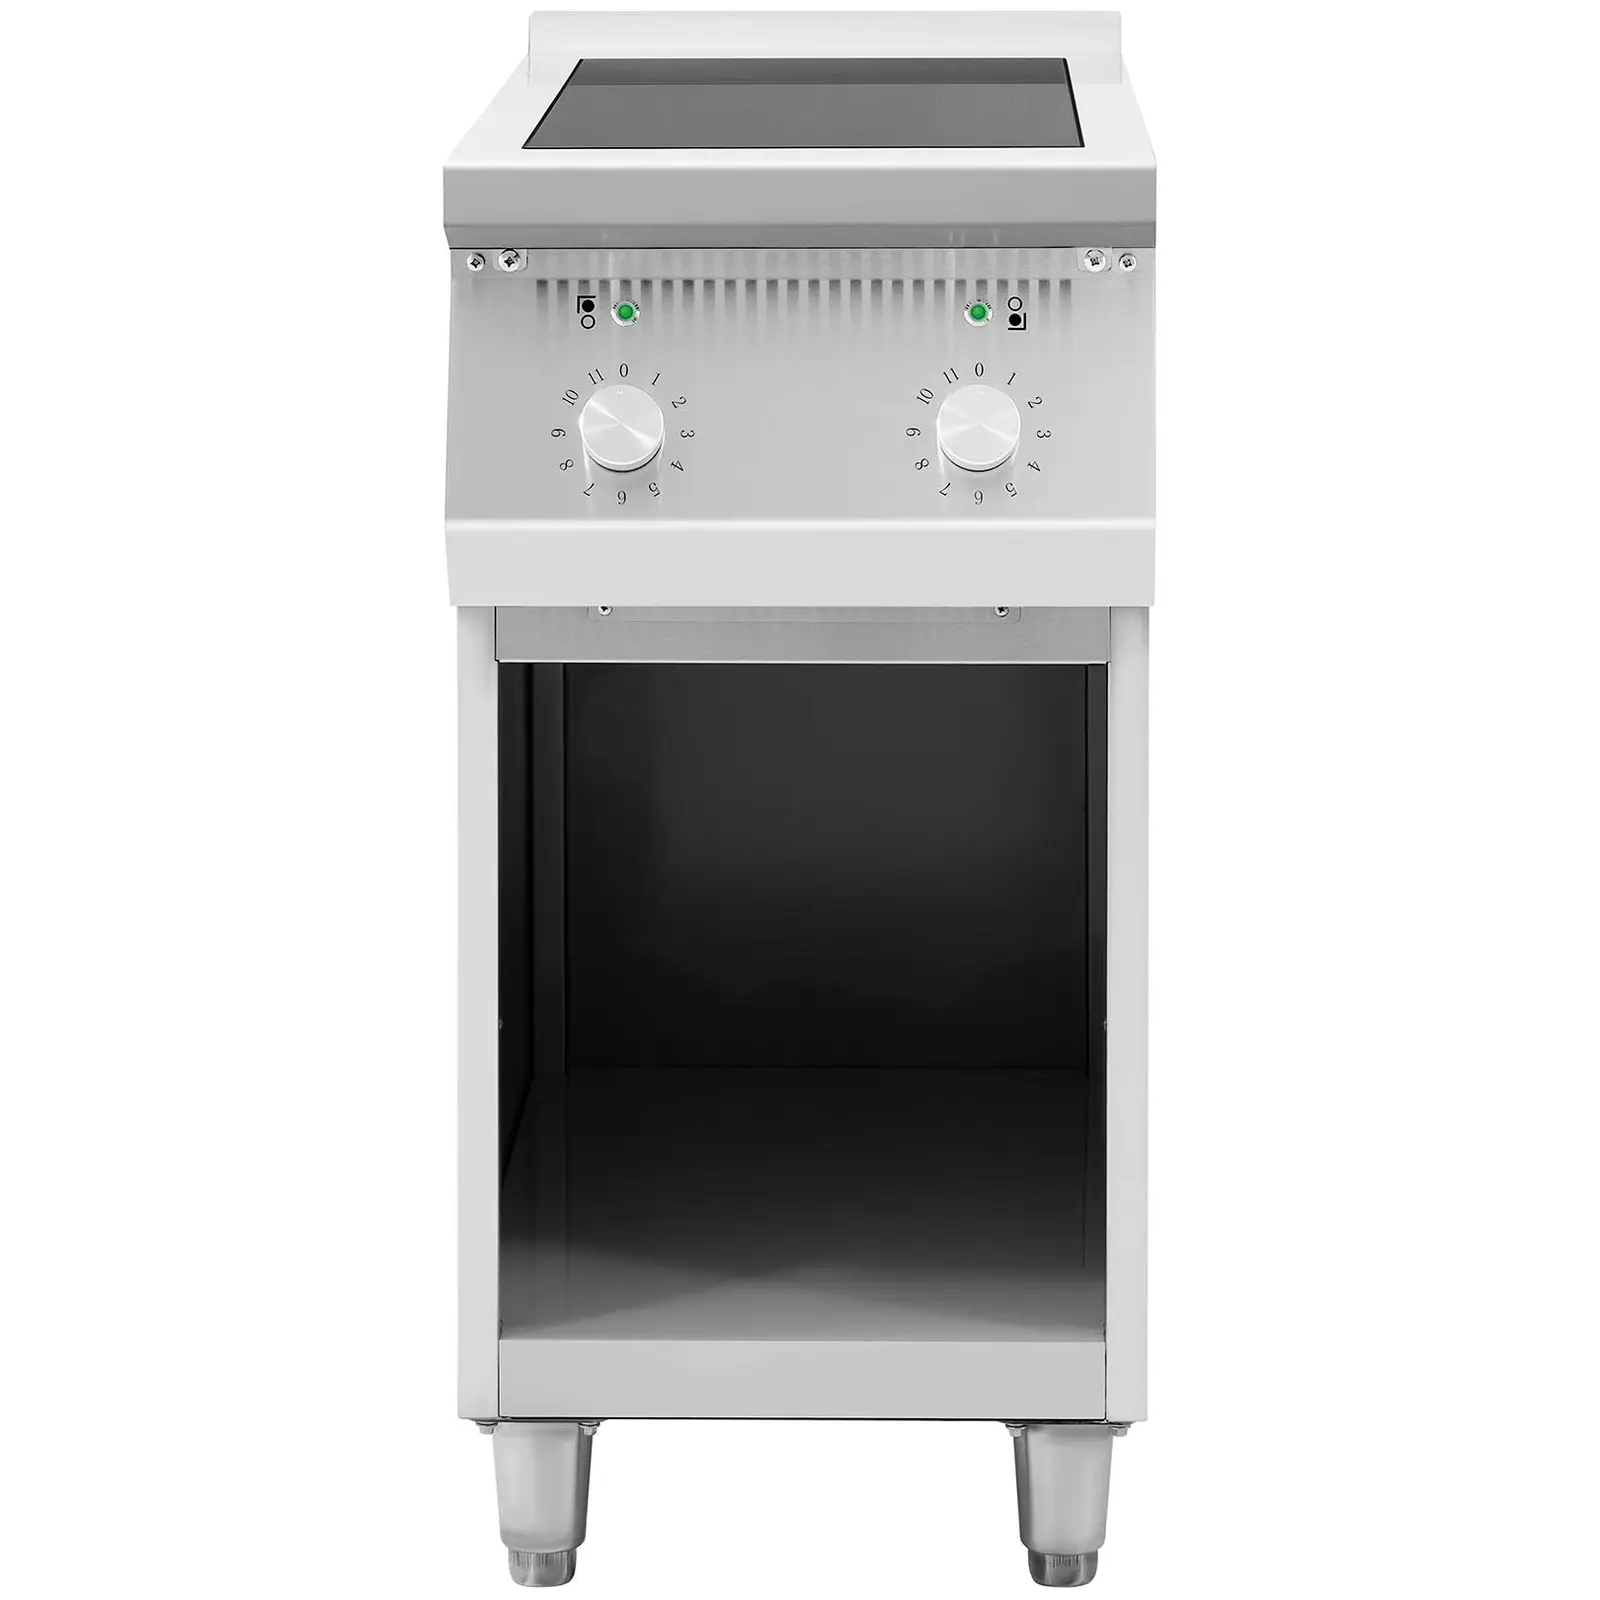 Ocasión Cocina de inducción - 8500 W - 2 zonas - 260 °C - espacio de almacenamiento - Royal Catering